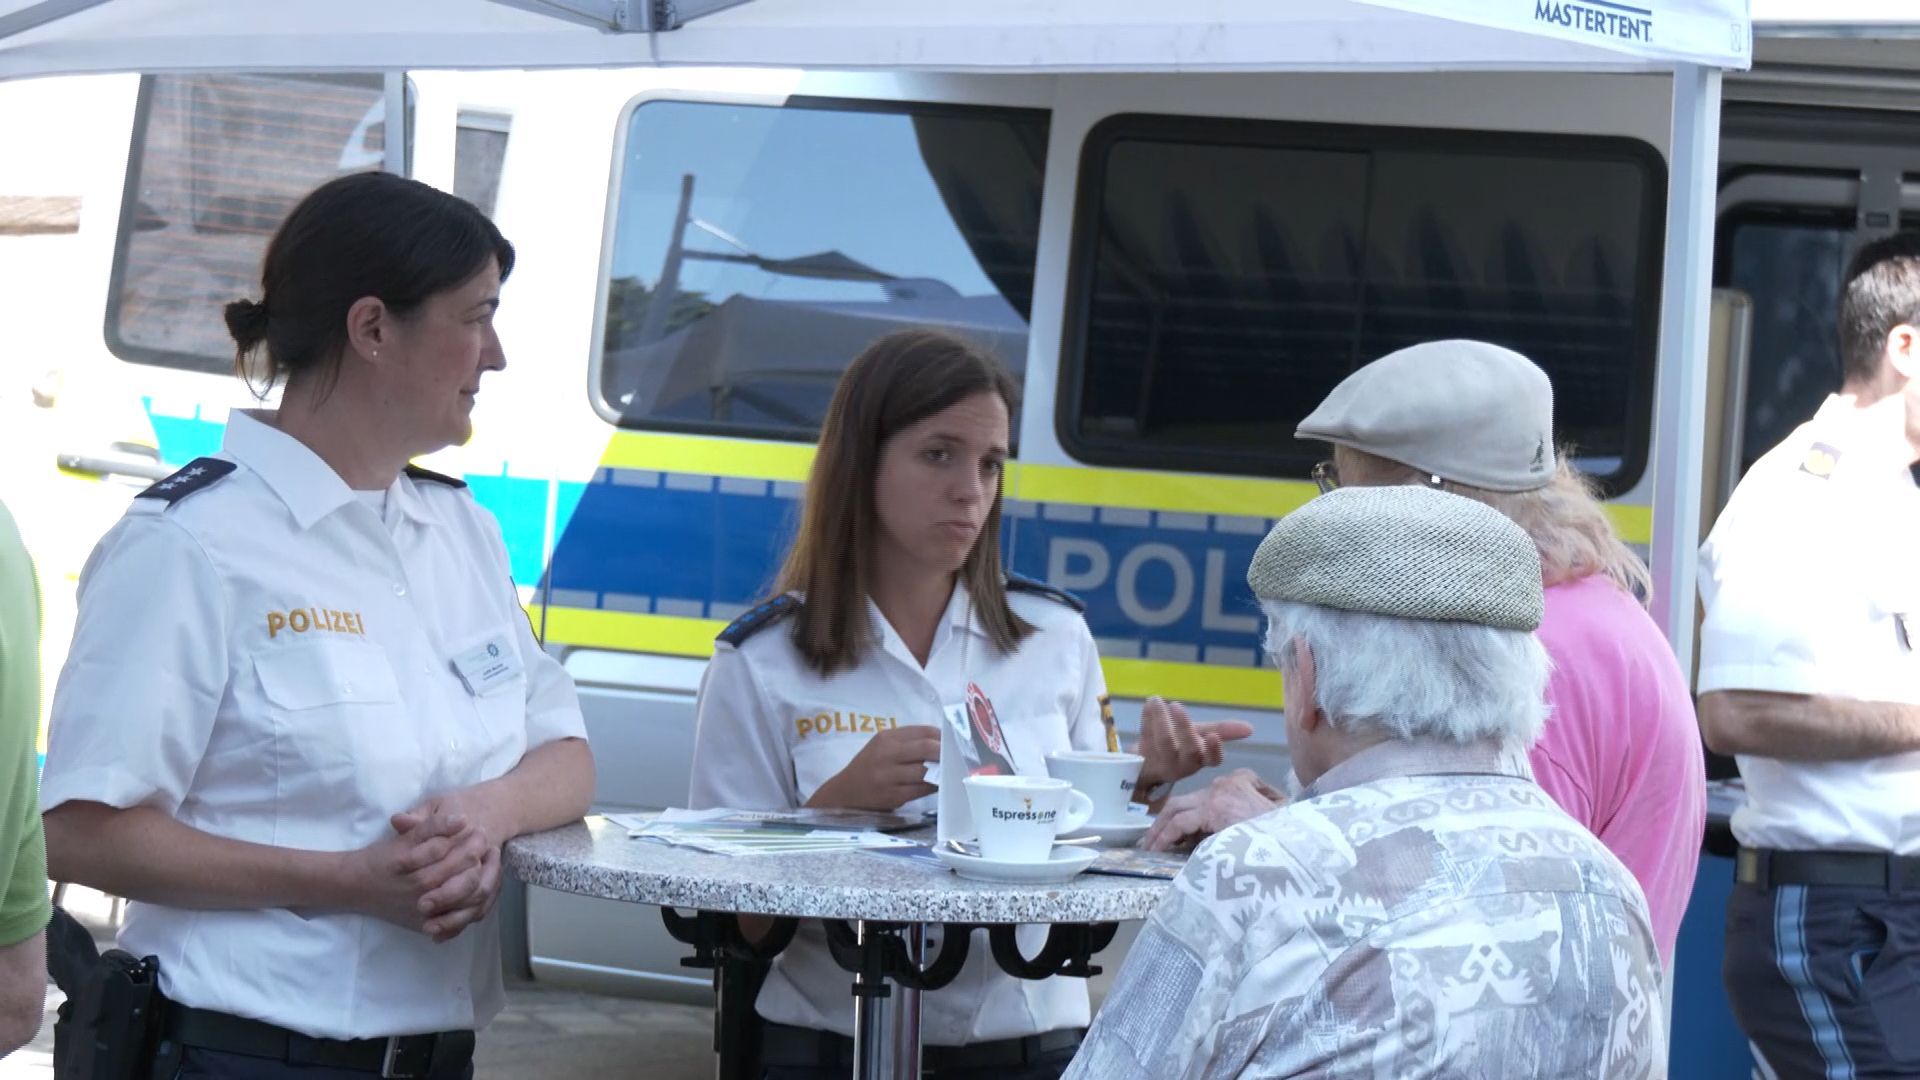 Kaffeeklatsch mit der Polizei Nürnberg: Einladung zum Coffee with a Cop